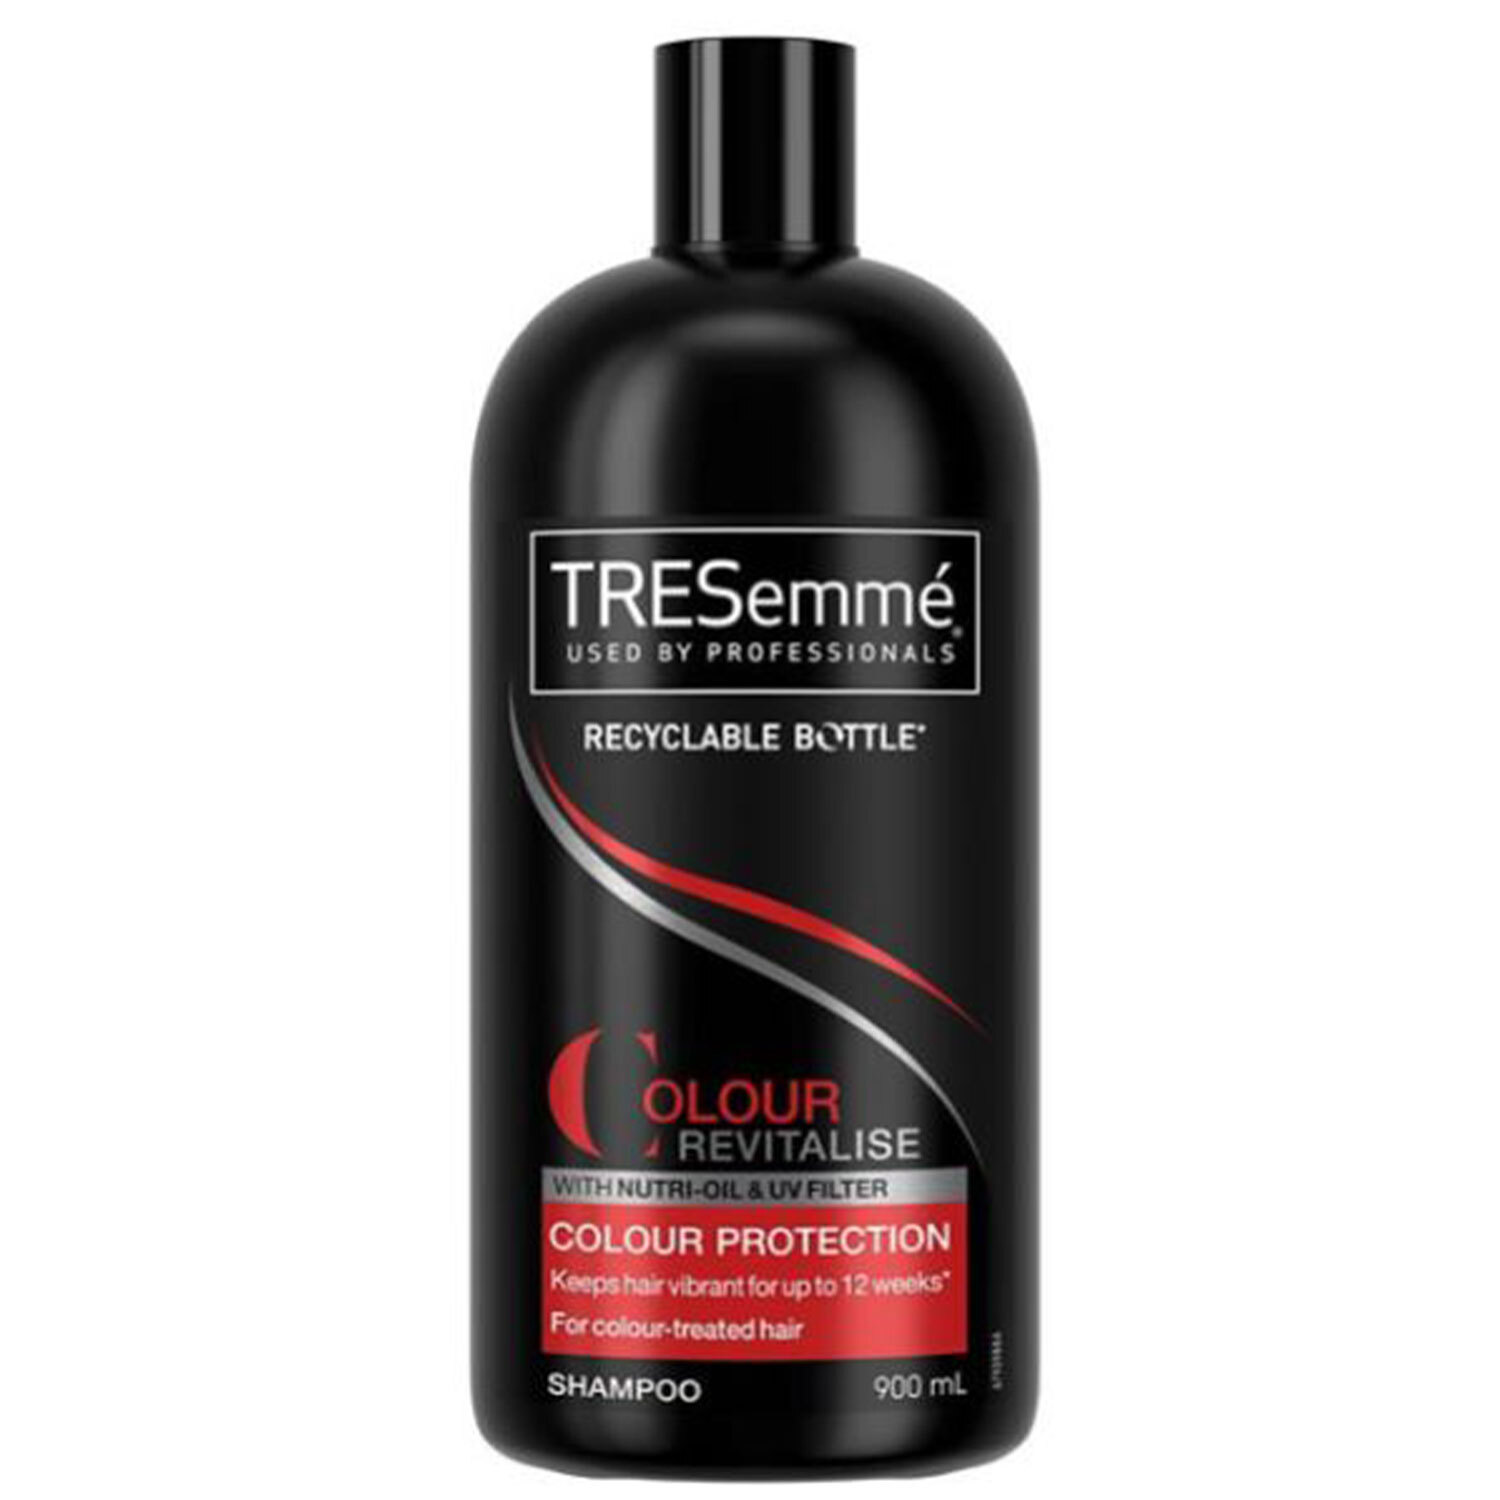 TRESemmé Colour Revitalise Colour Protection Shampoo 900ml Image